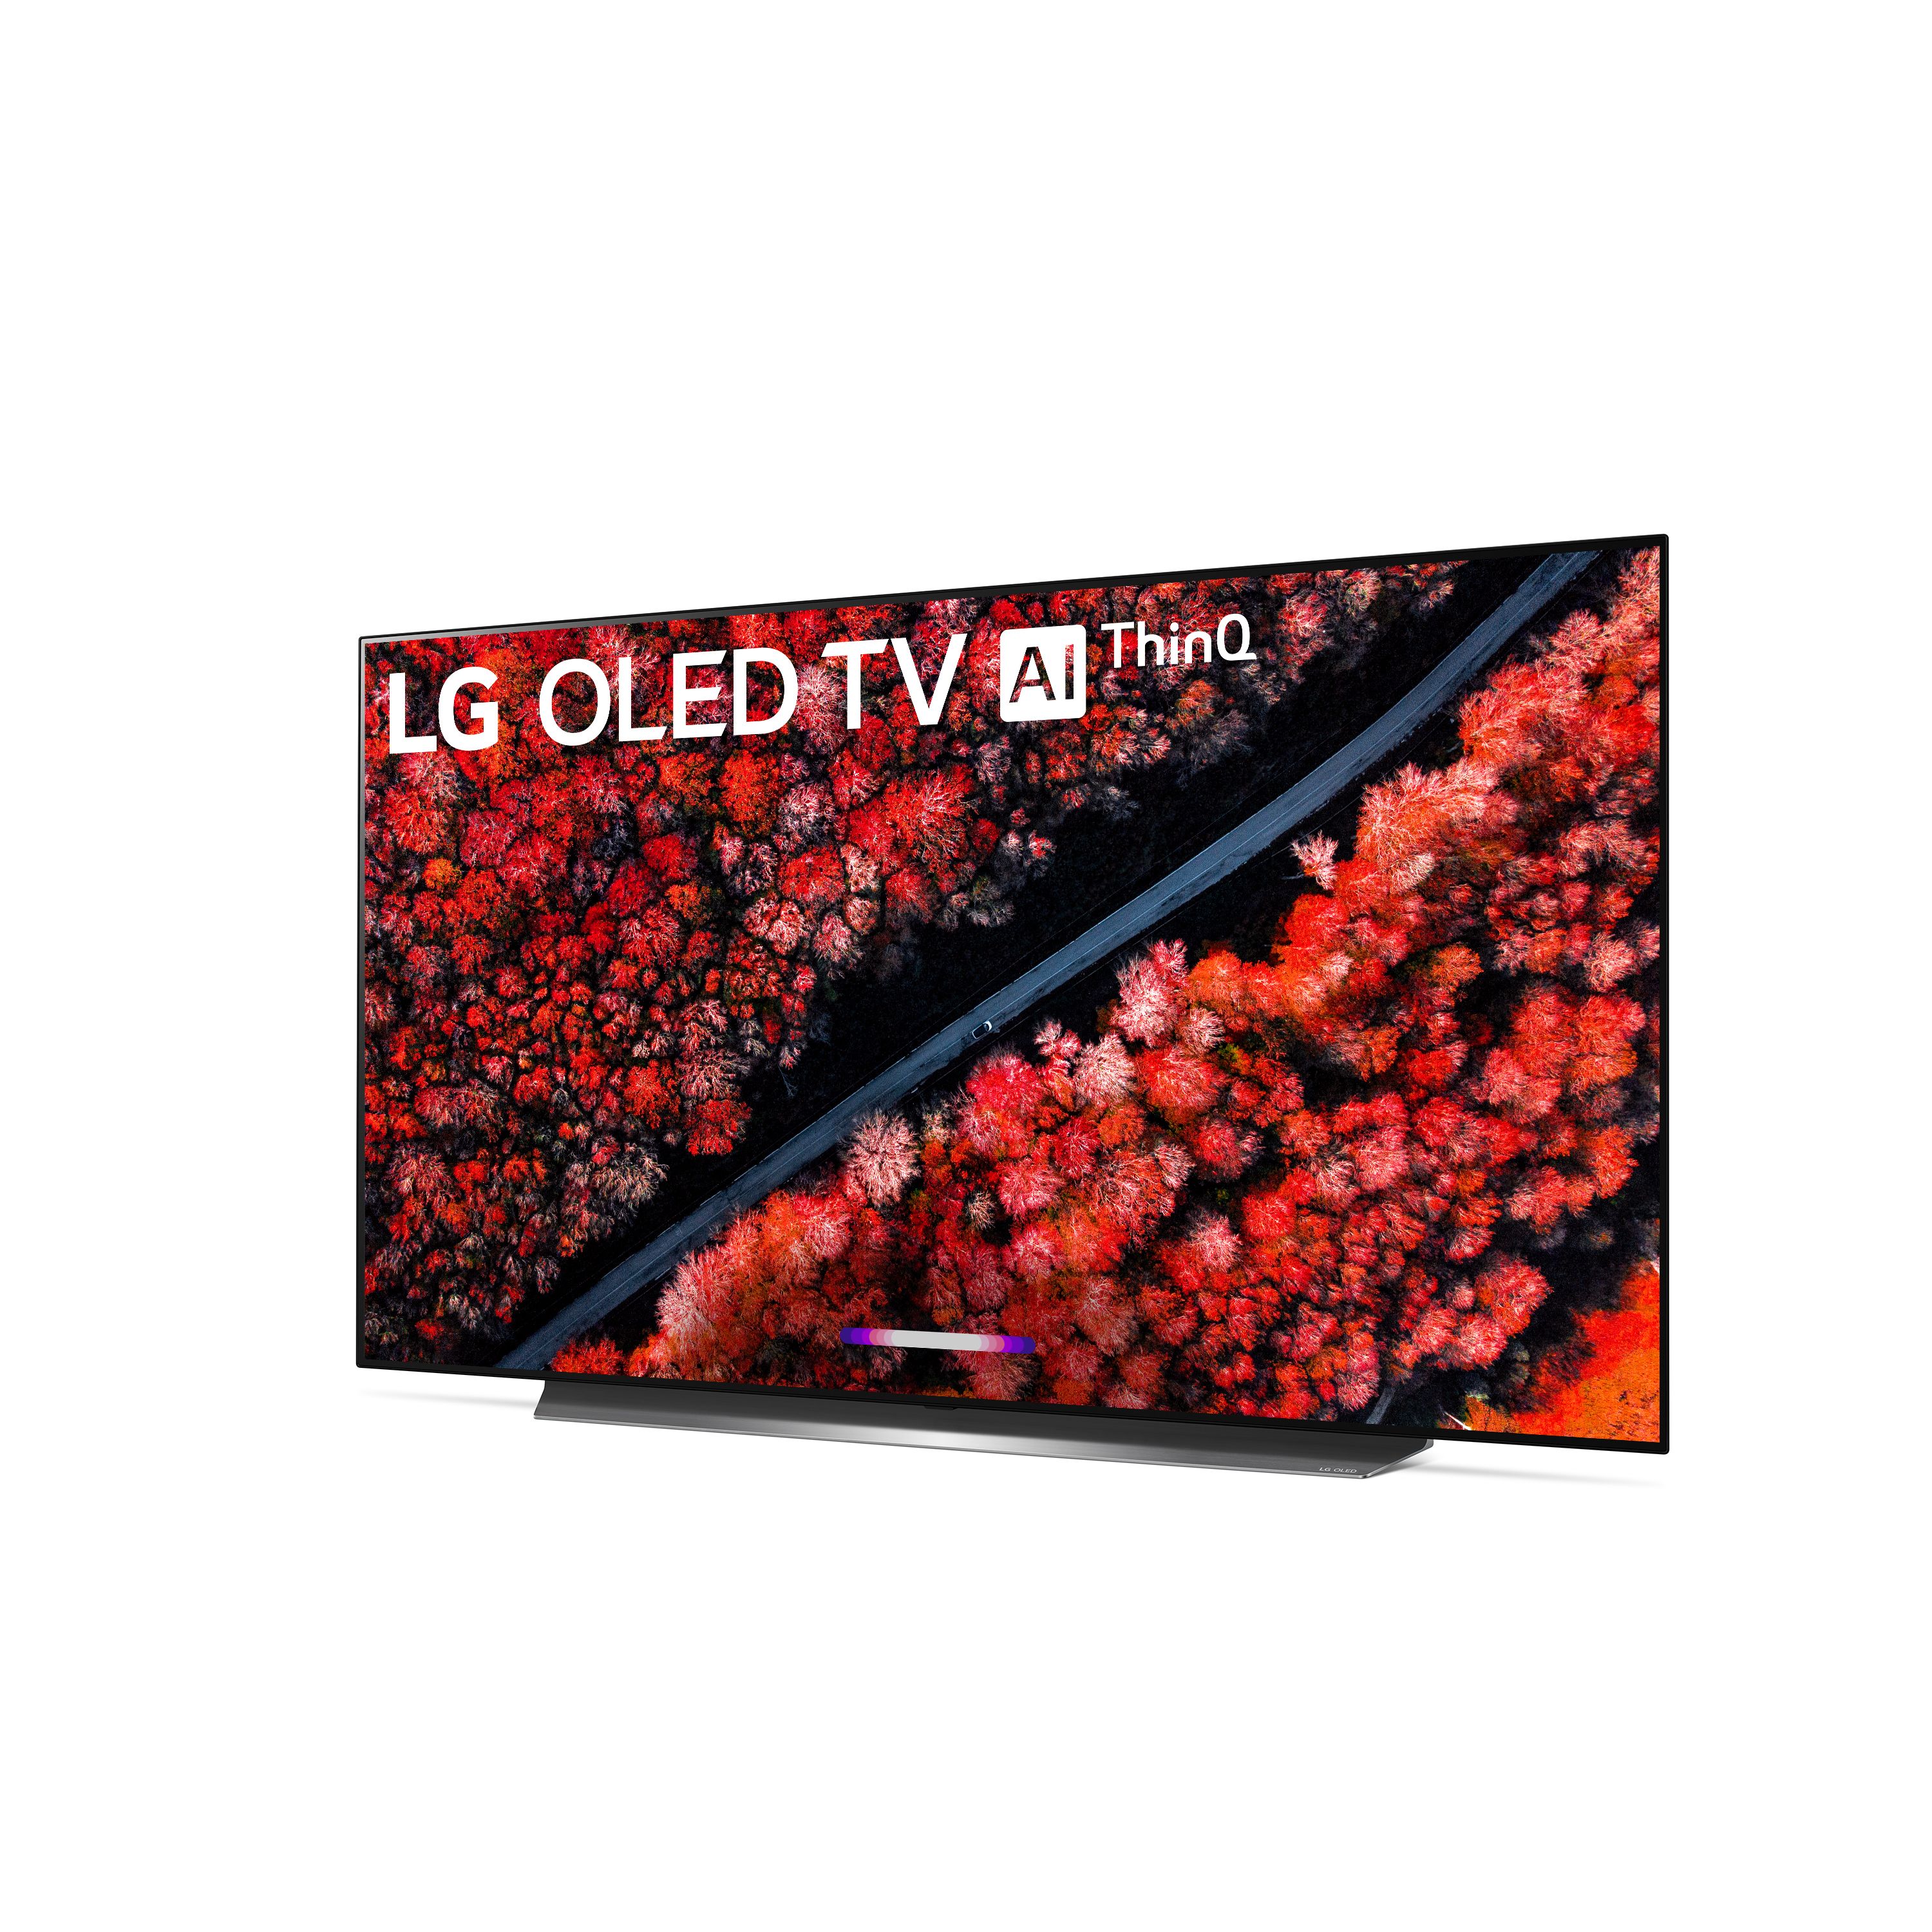 LG 55" Class OLED C9 Series 4K (2160P) Smart Ultra HD HDR TV - OLED55C9PUA 2019 Model - image 3 of 17